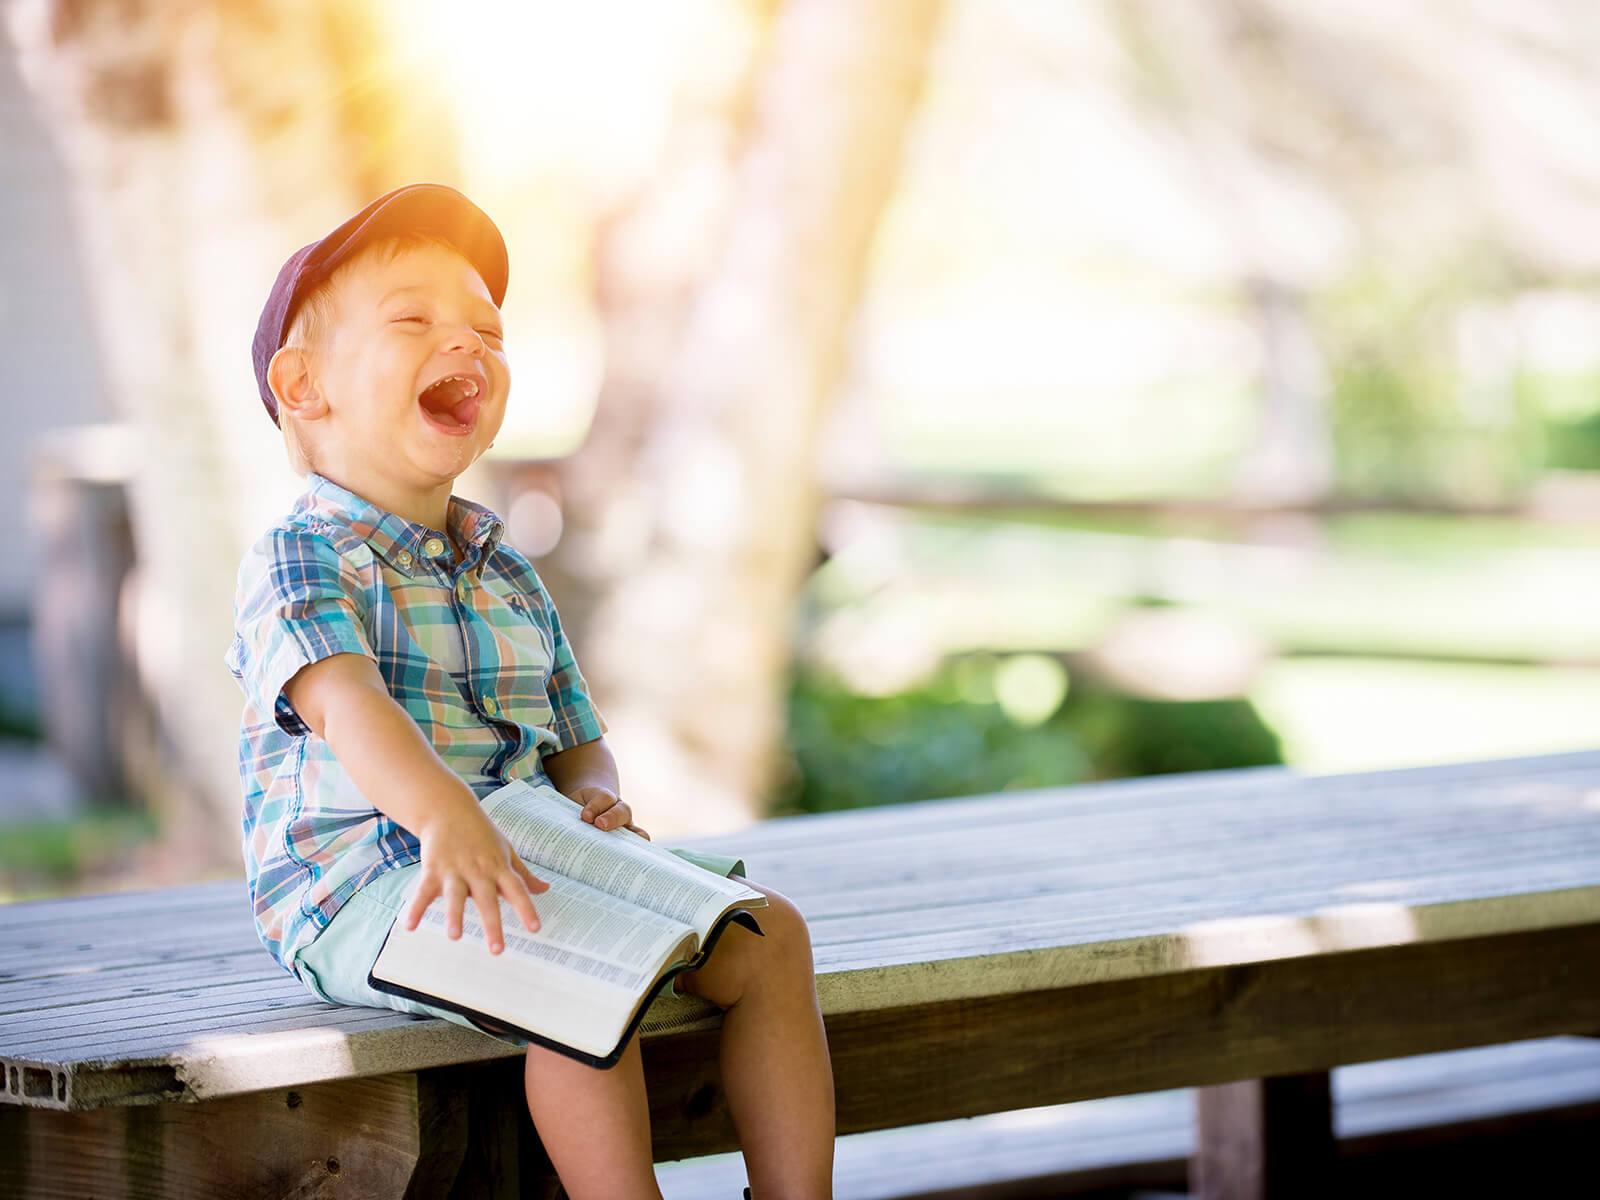 Lachendes Kind auf einer Bank (c) CC0 1.0 - Public Domain (von unsplash.com)